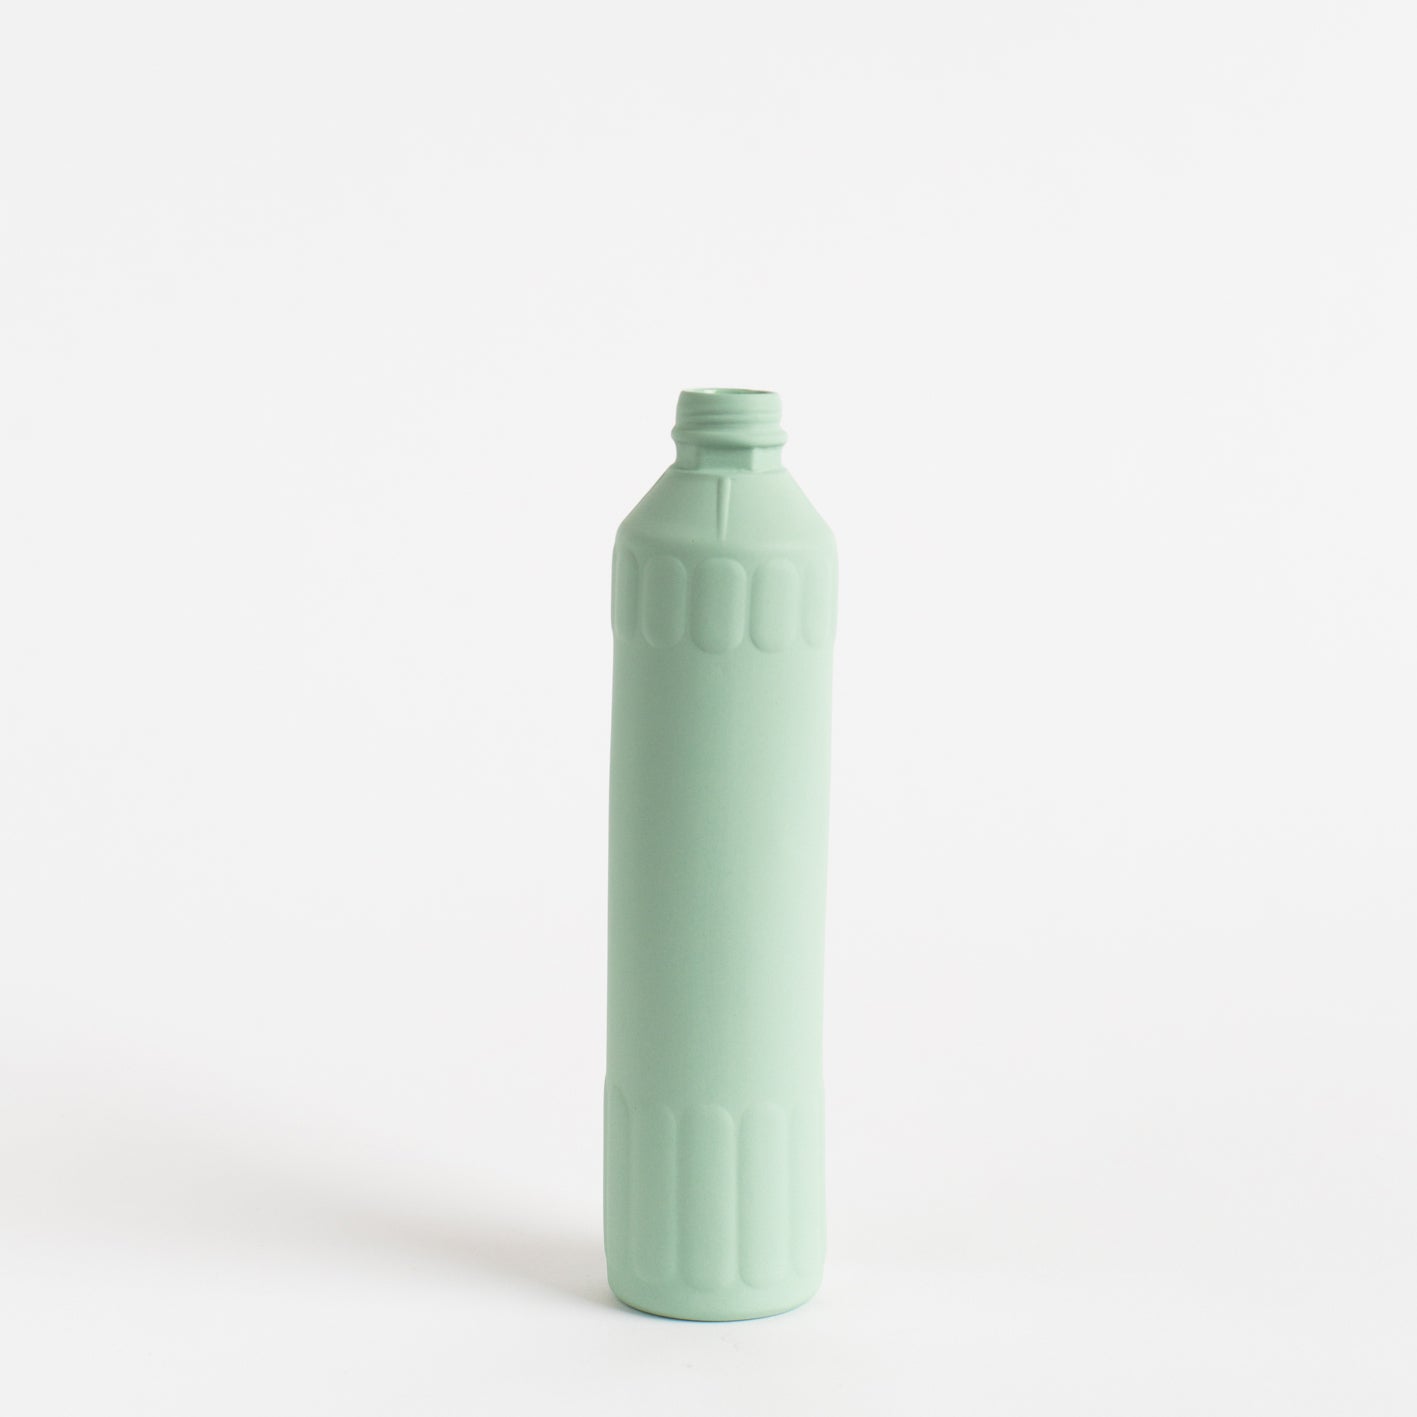 Porcelain Bottle Vase #26 - mint